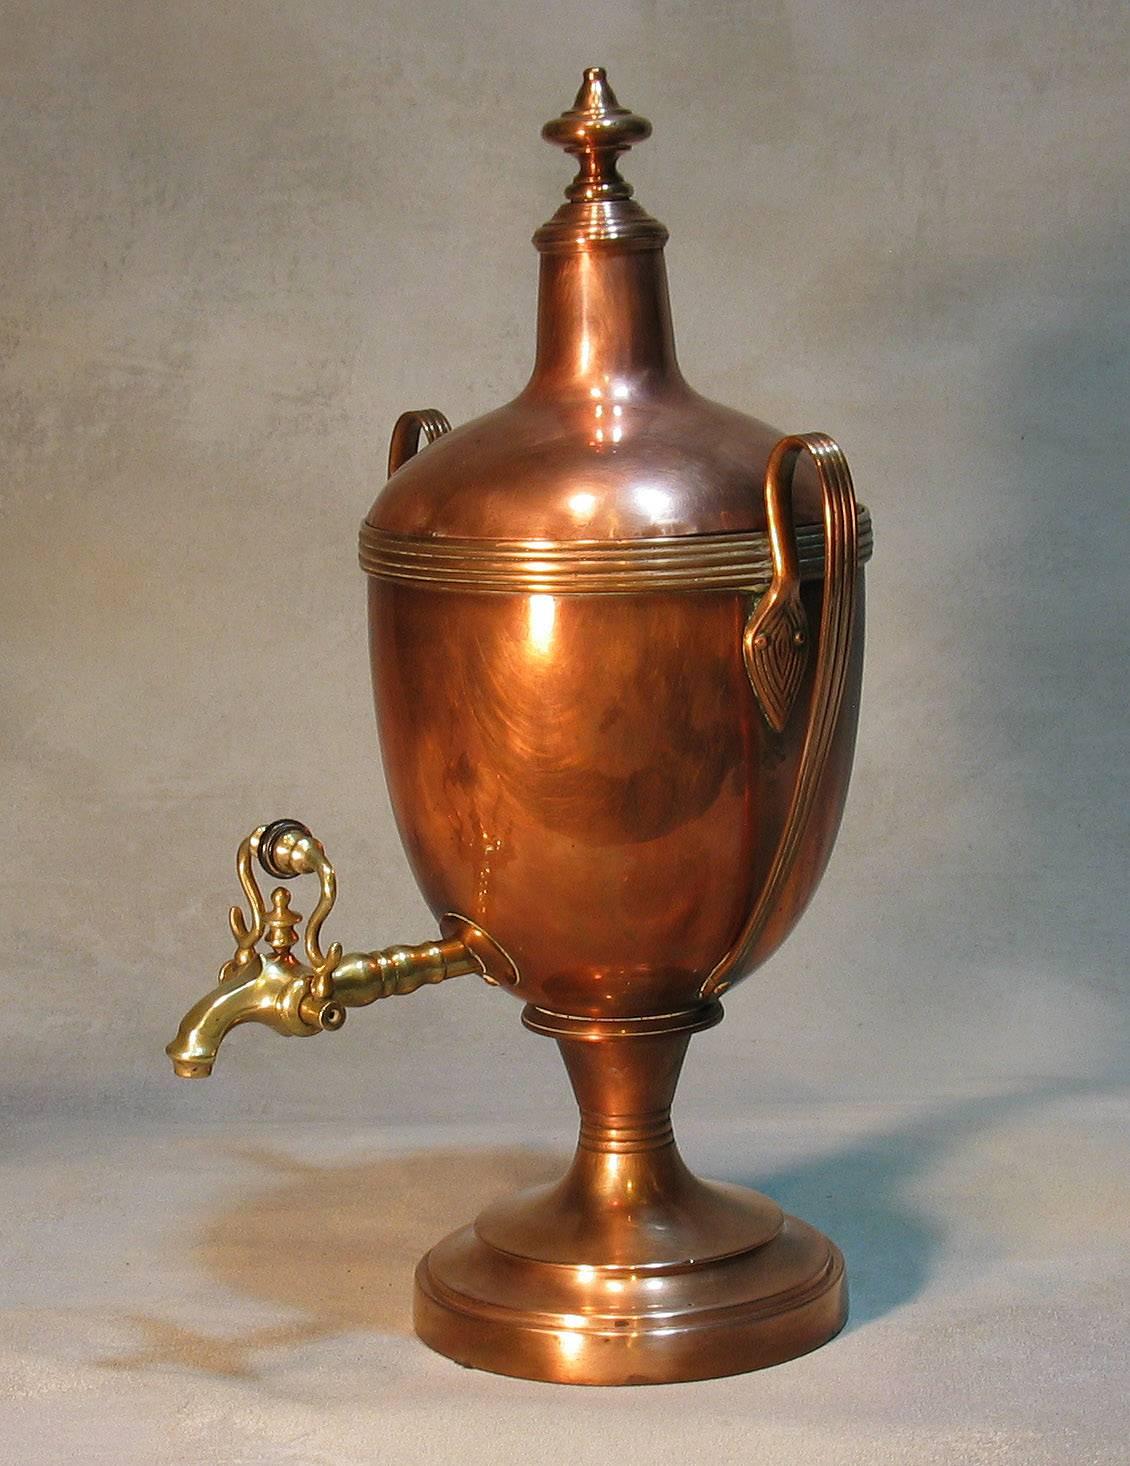 19th Century Victorian Copper Hot Water Urn, Paris Exhibition 1855 Medal Winner Design